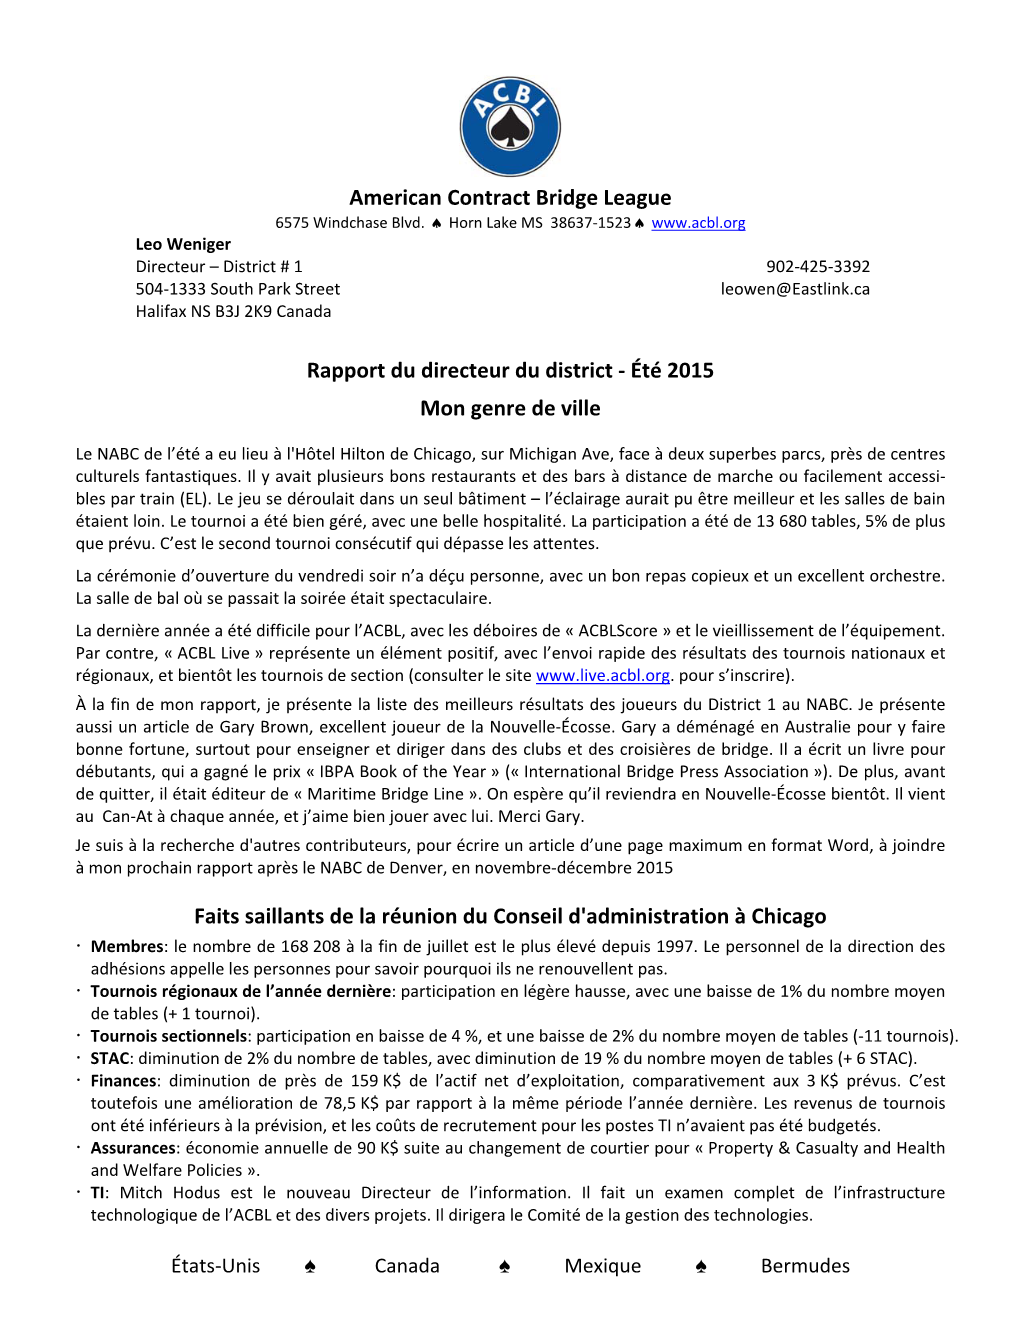 American Contract Bridge League Rapport Du Directeur Du District